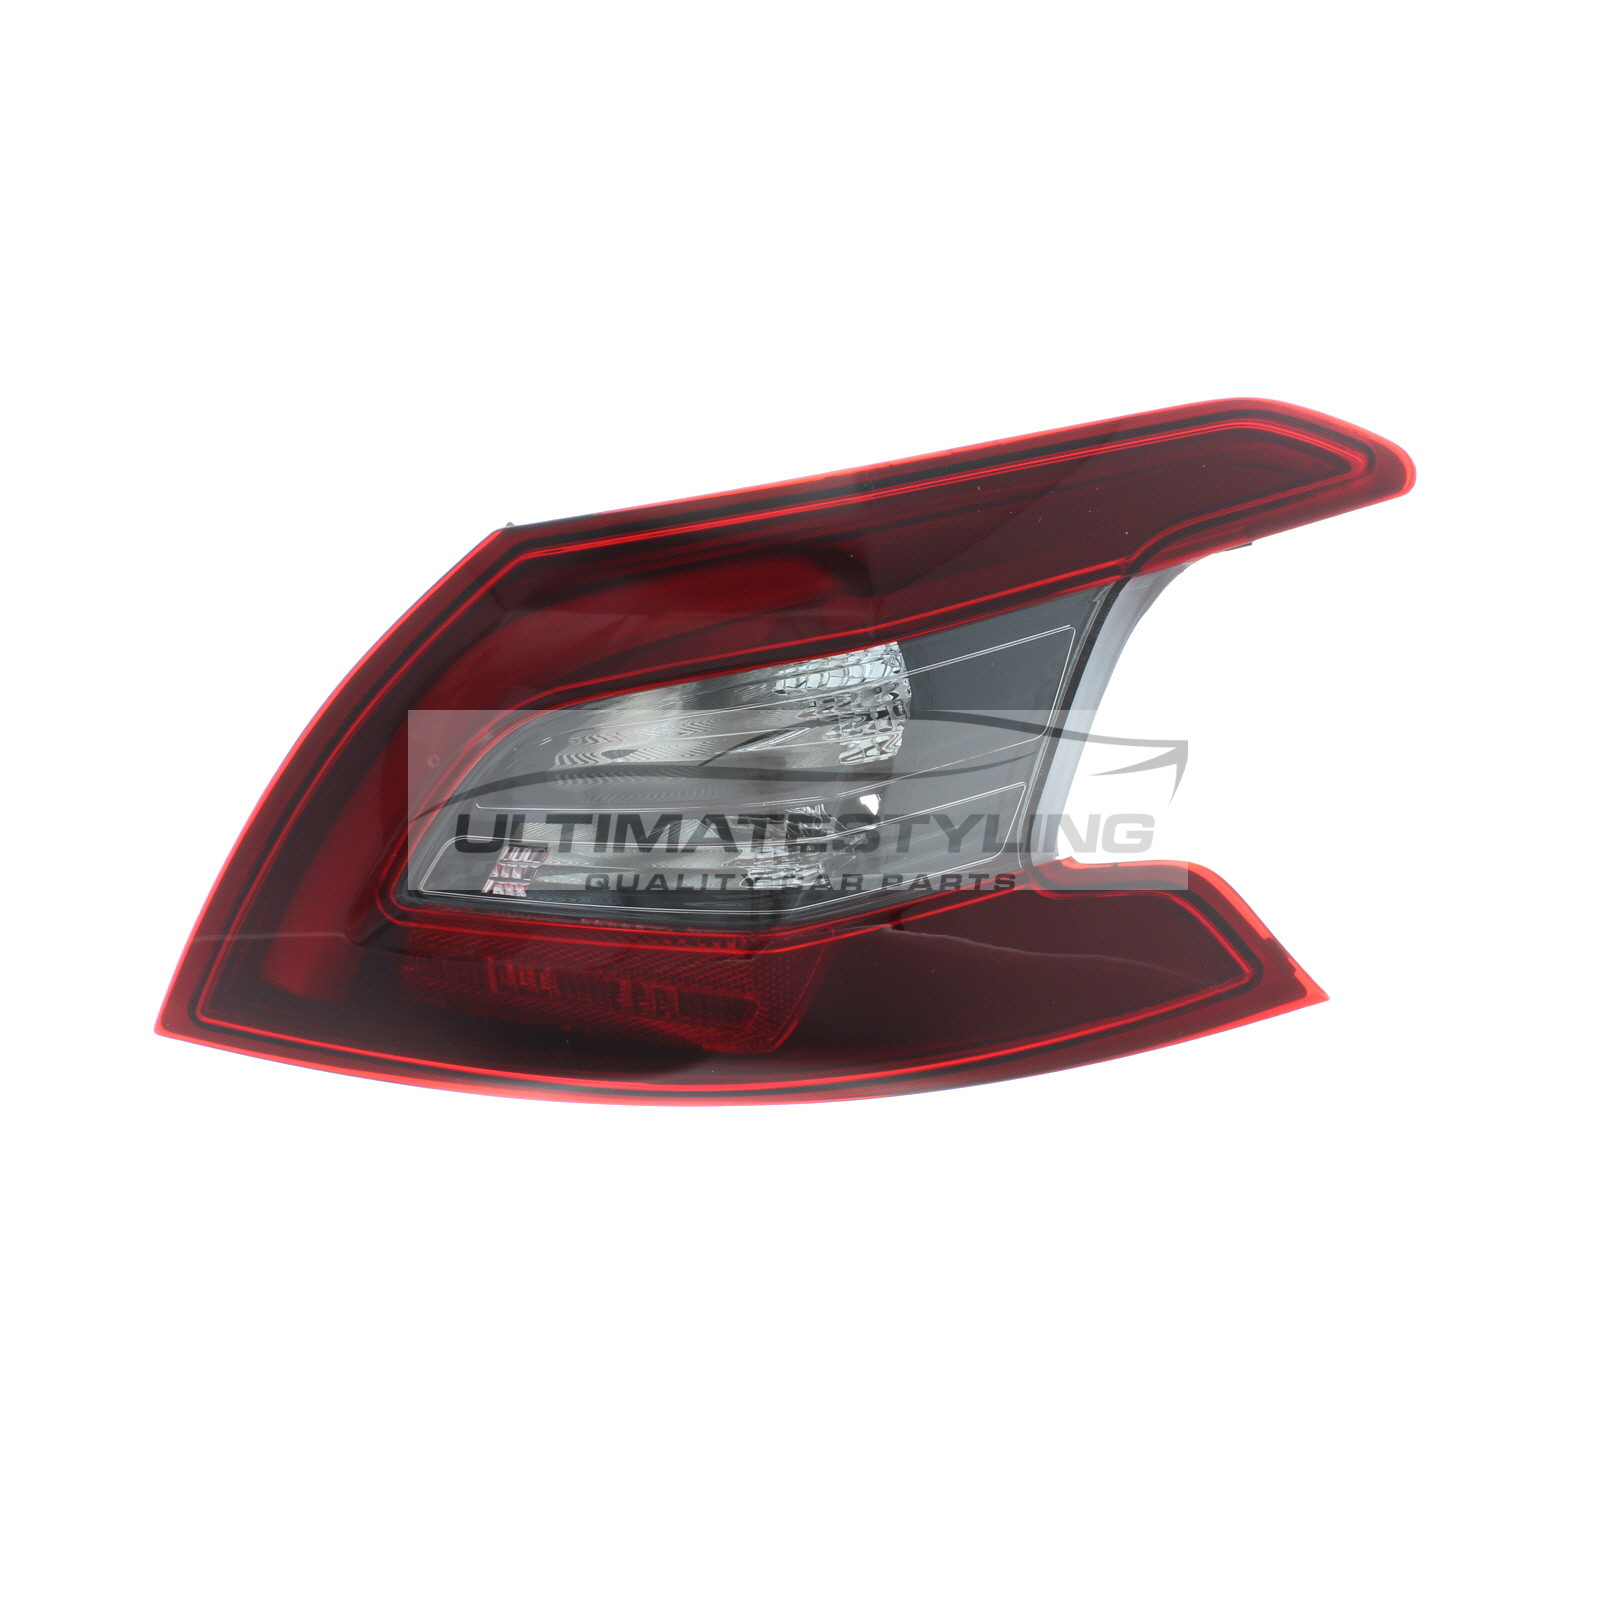 Rear Light / Tail Light for Peugeot 308